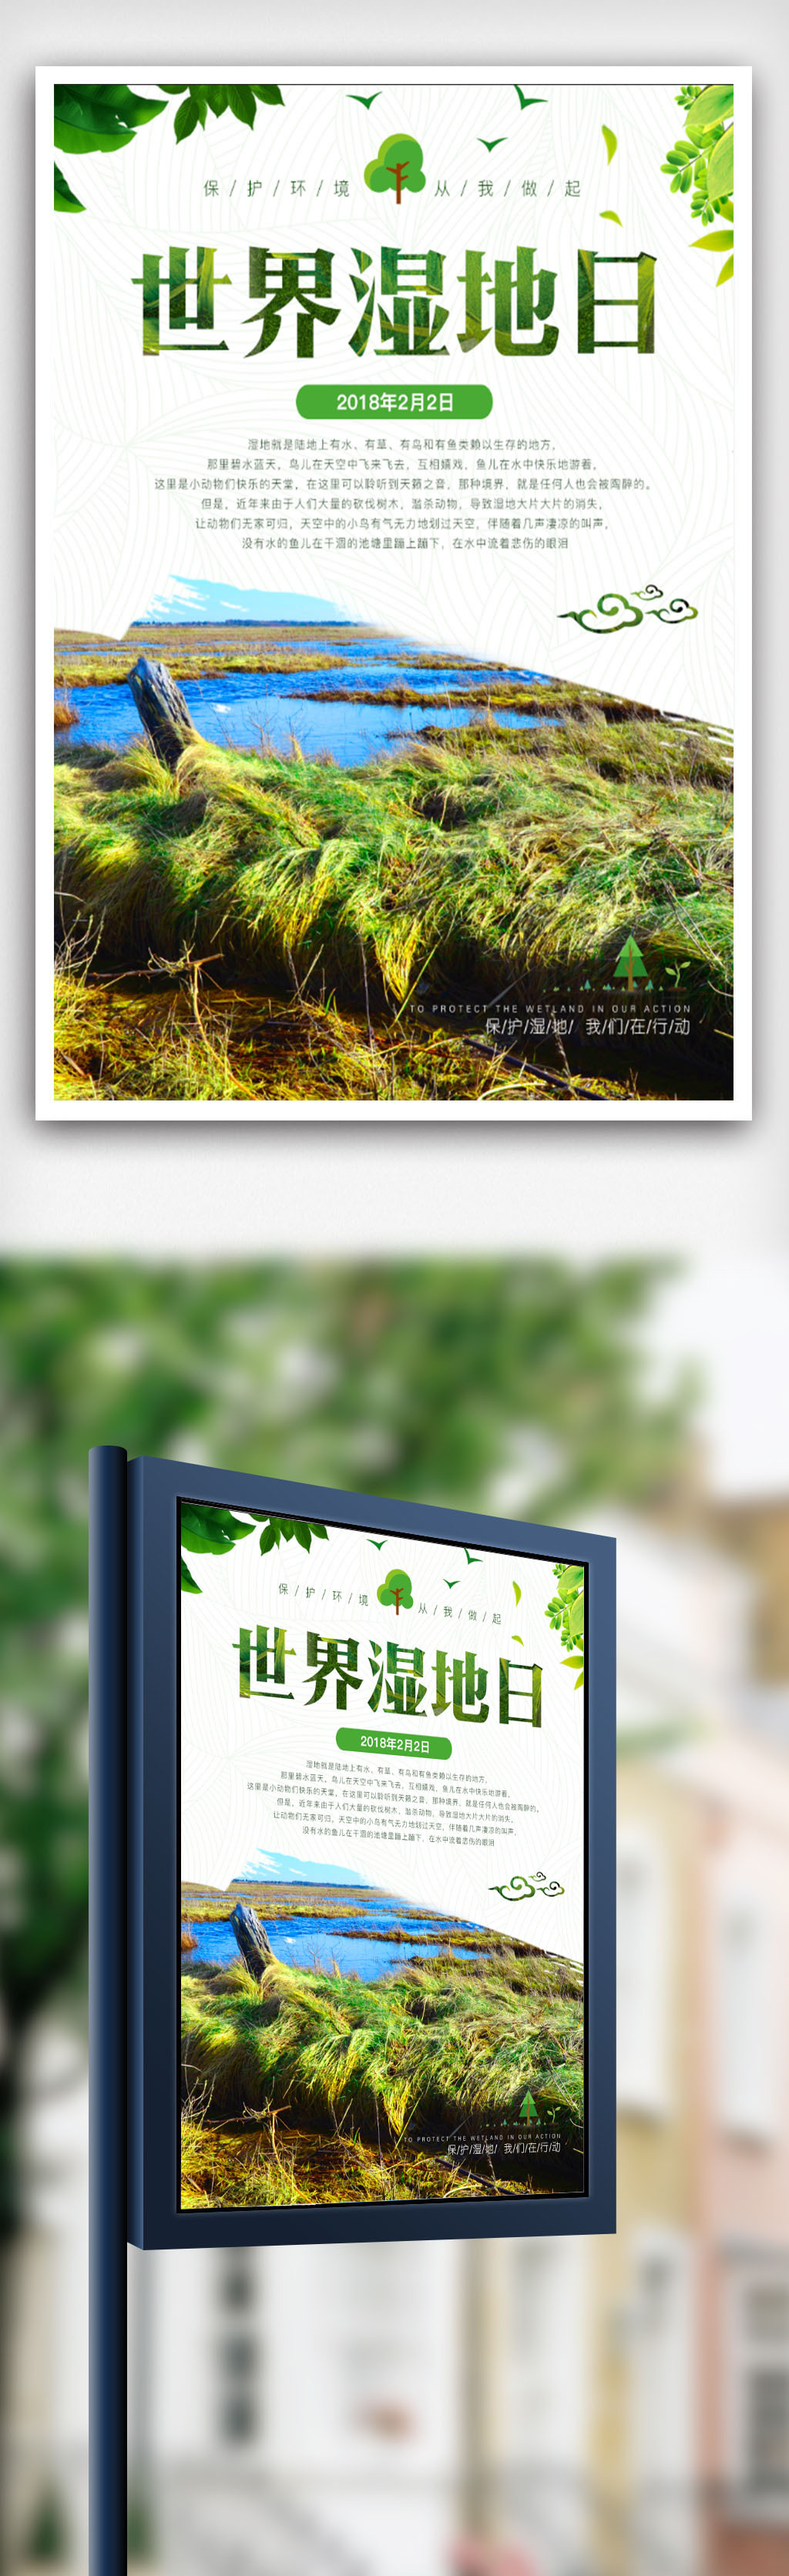 创意简约世界湿地日保护湿地海报图片